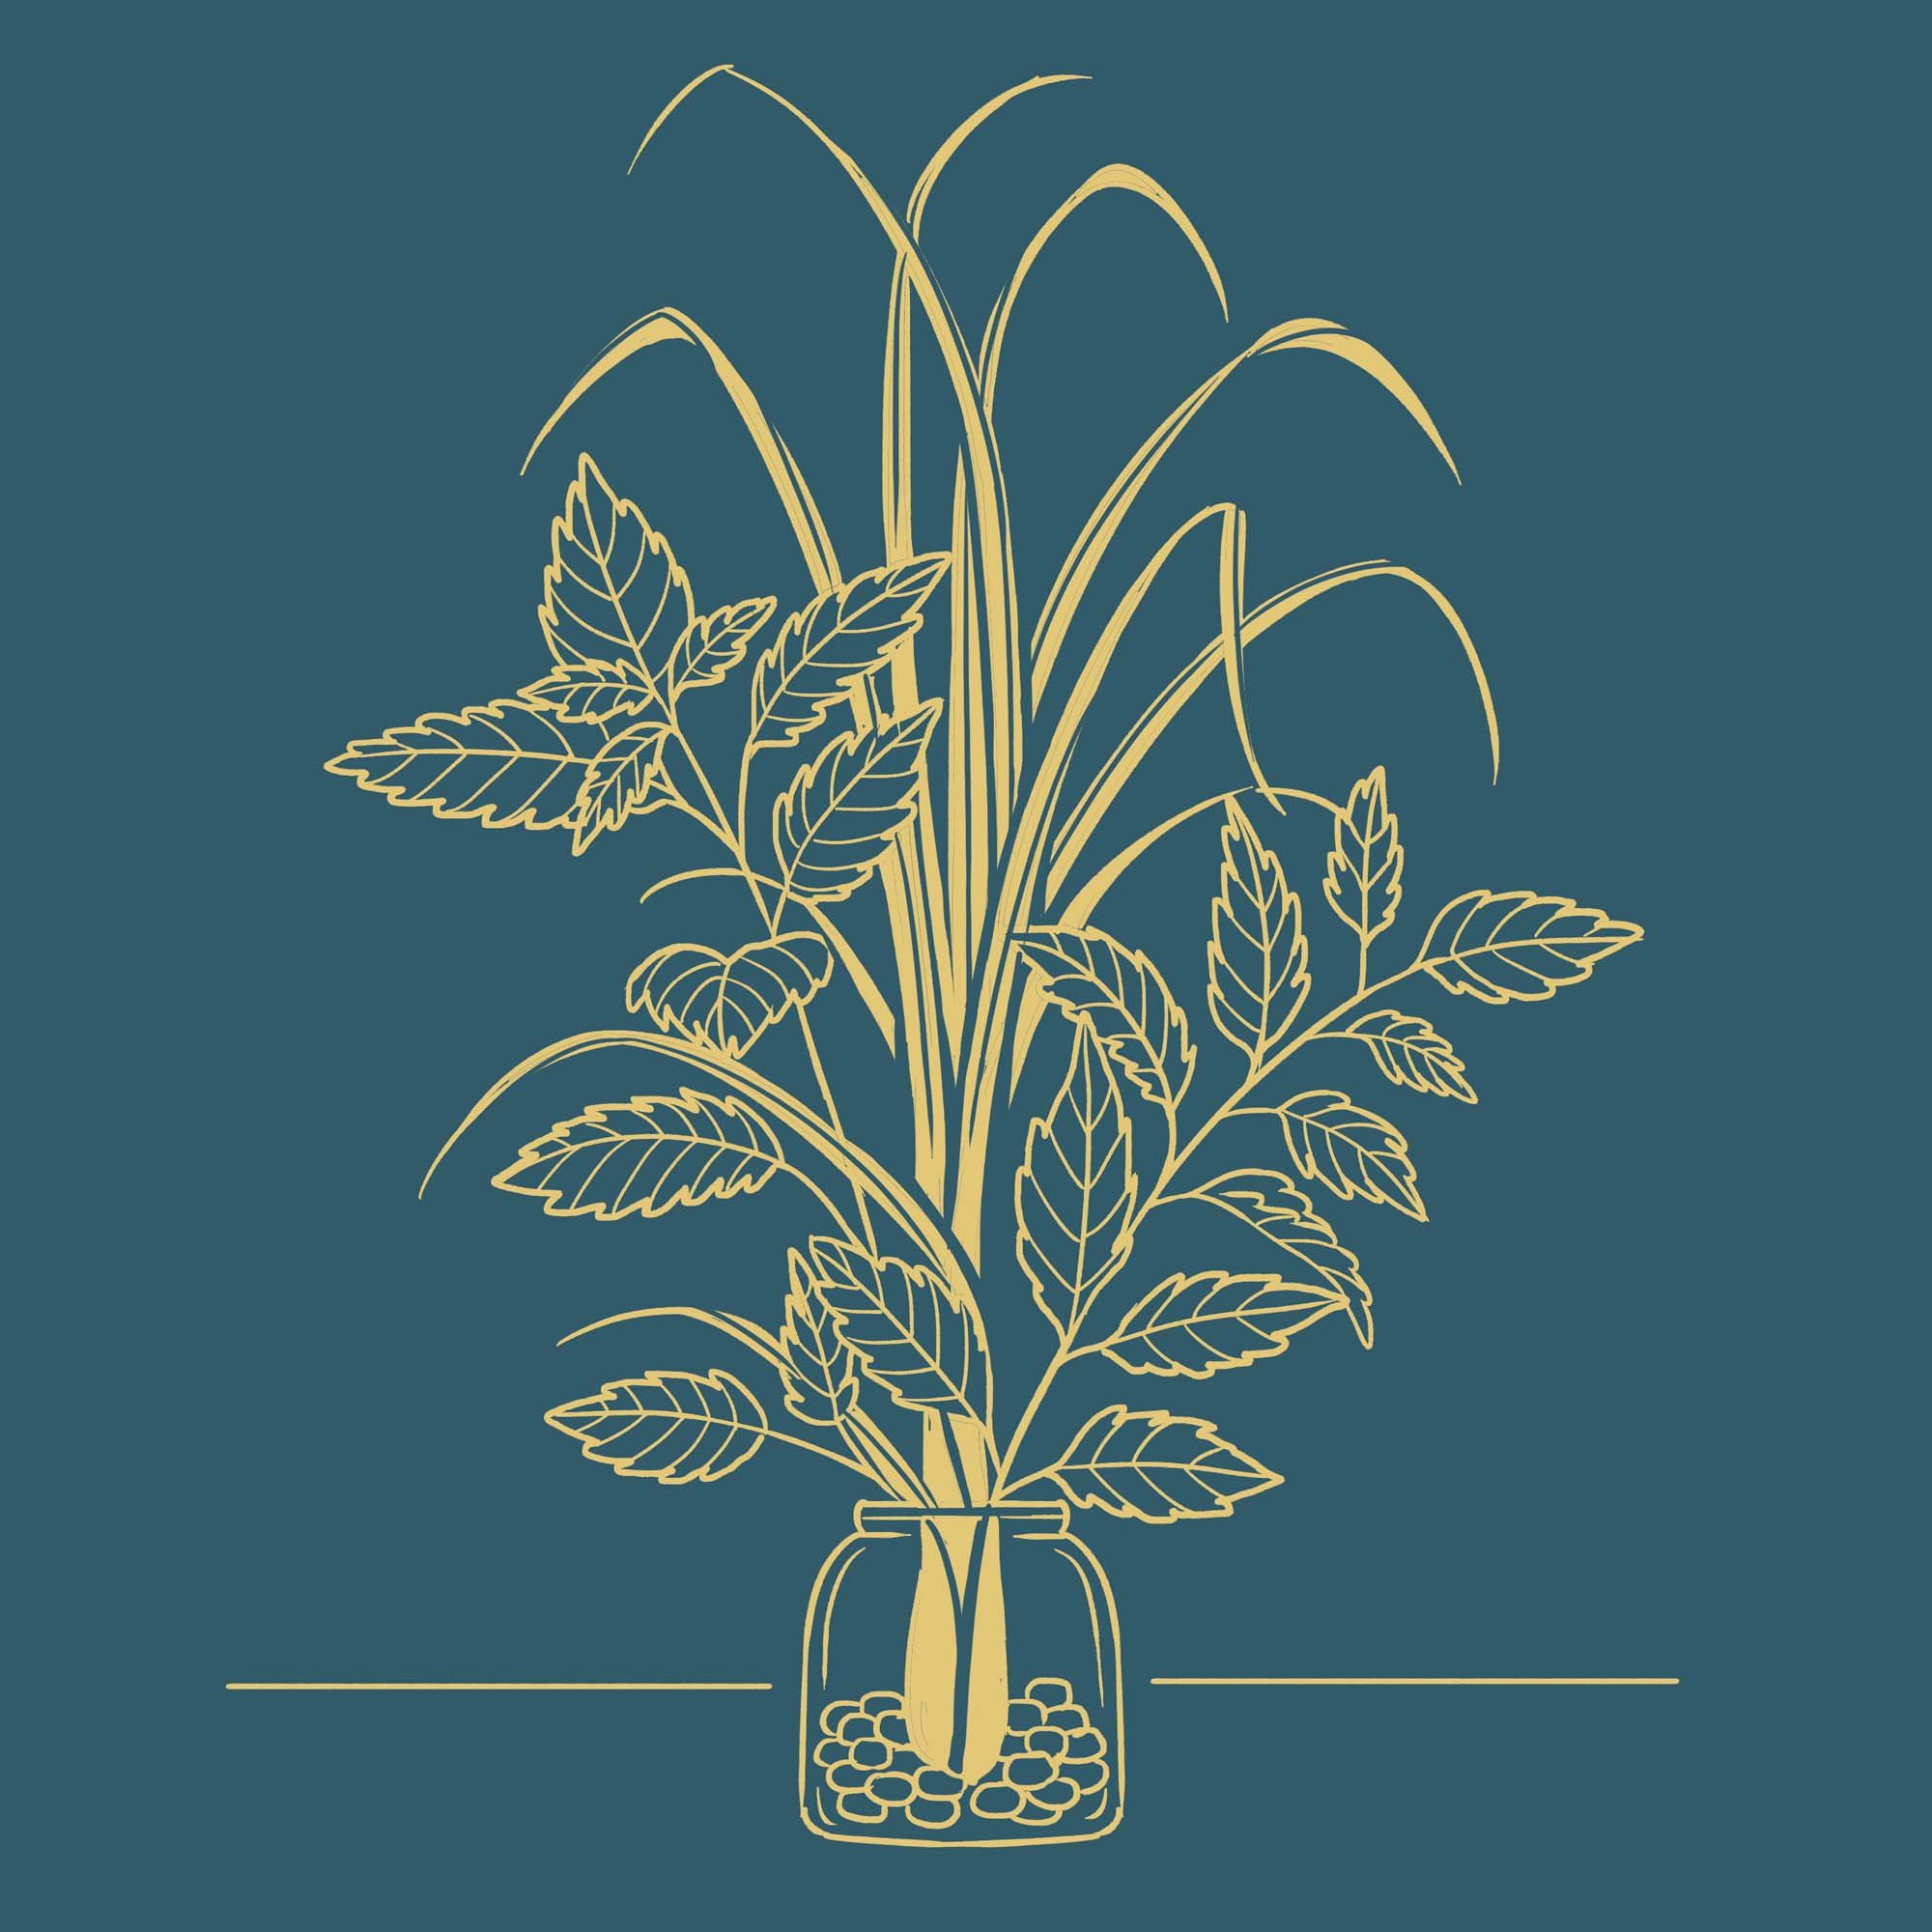 Lemongrass and Spearmint.jpg